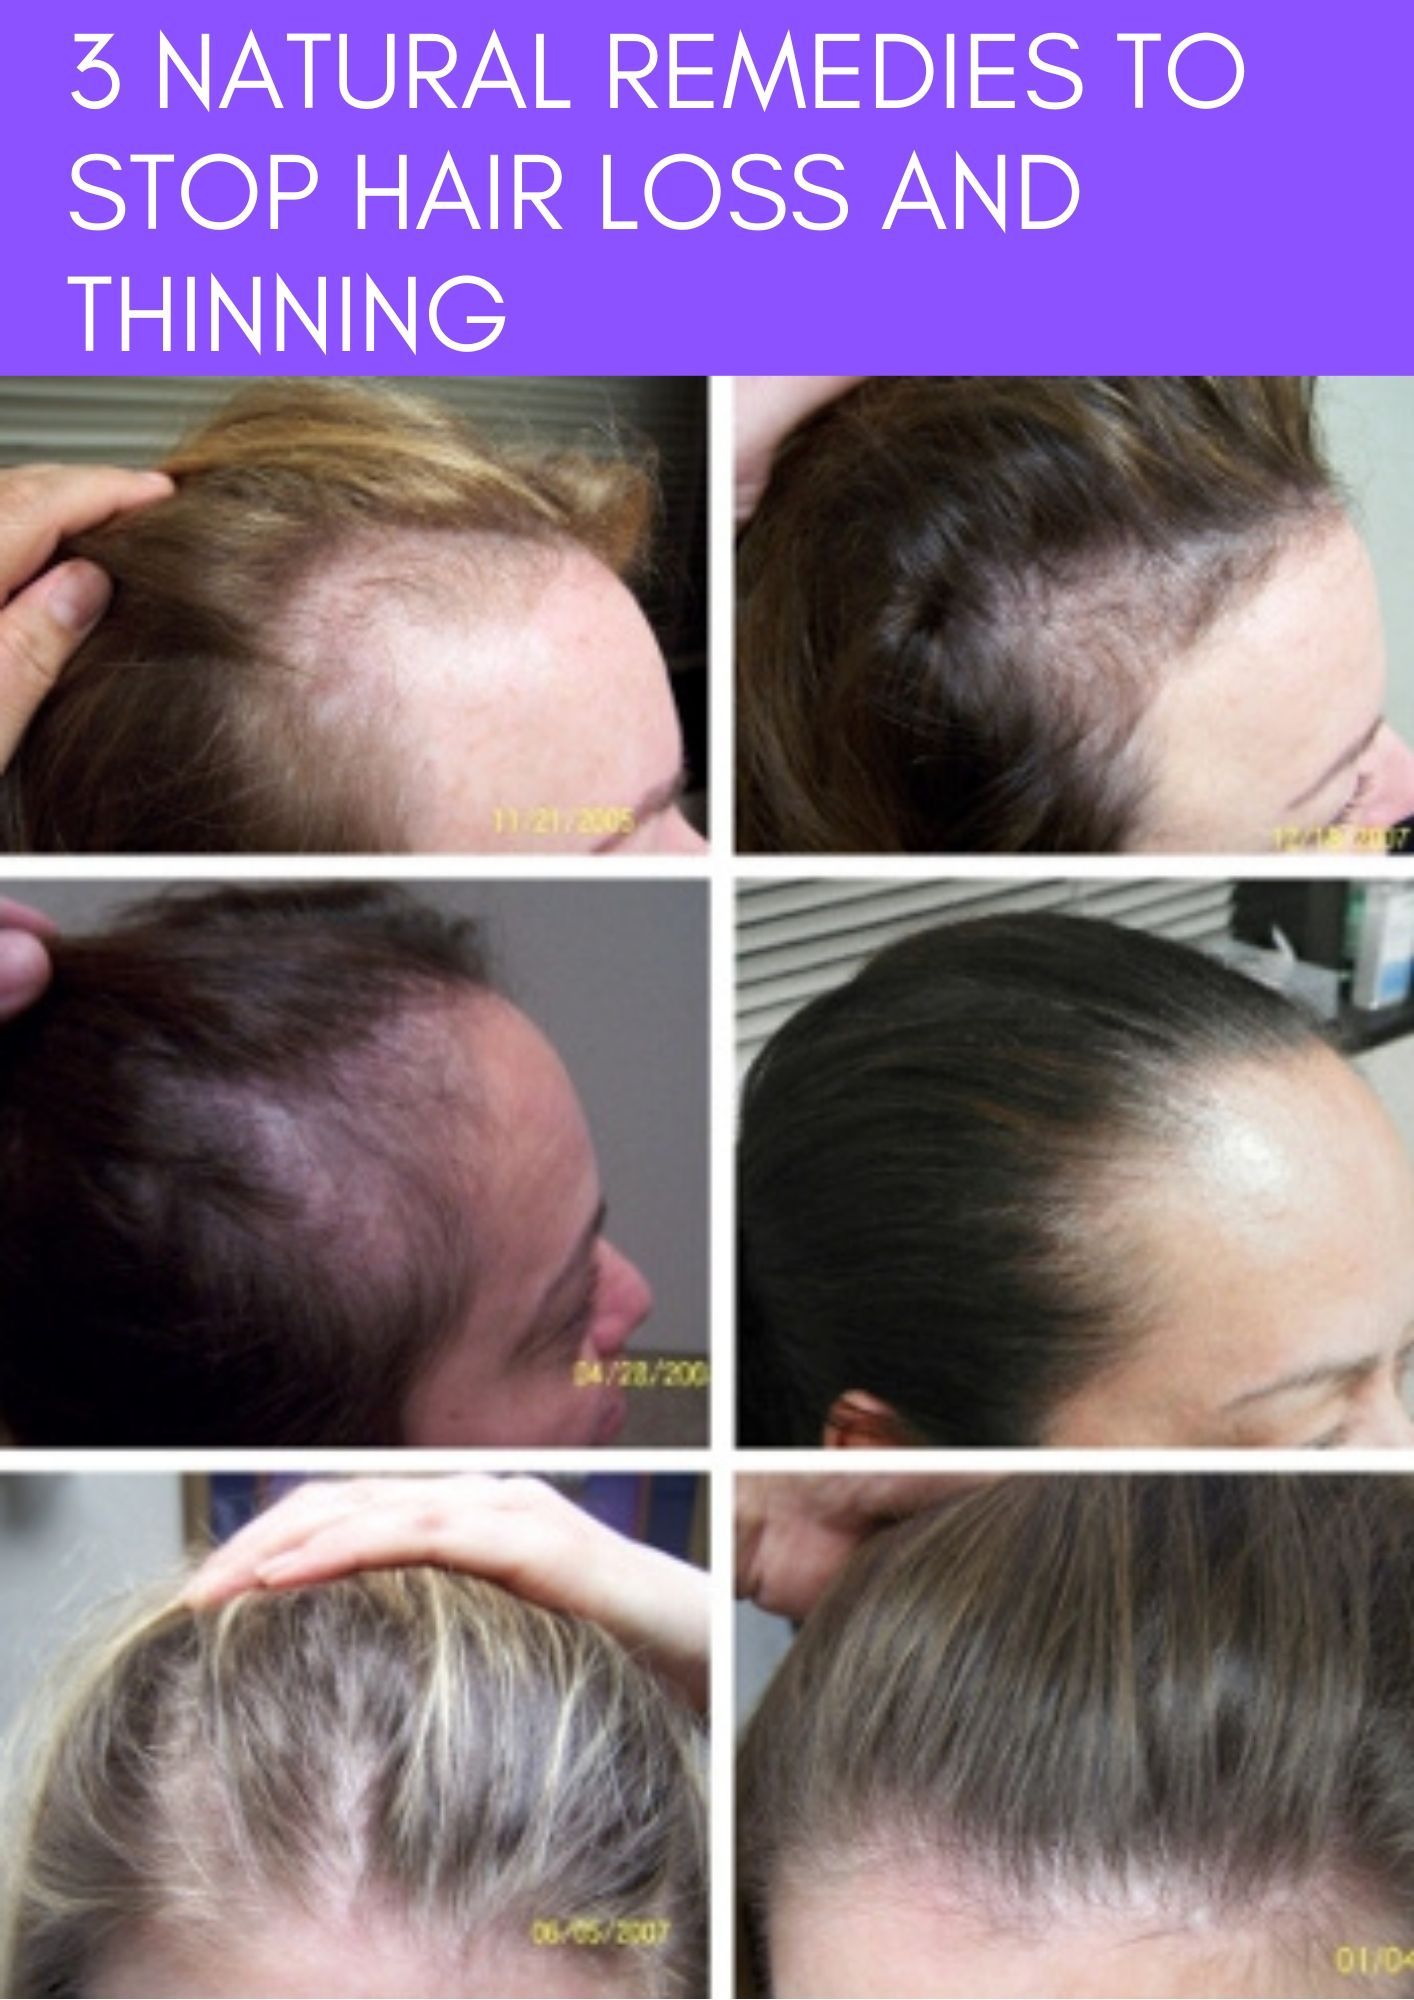 Выпадение волос во время и после беременности — норма ли это? • центр гинекологии в санкт-петербурге